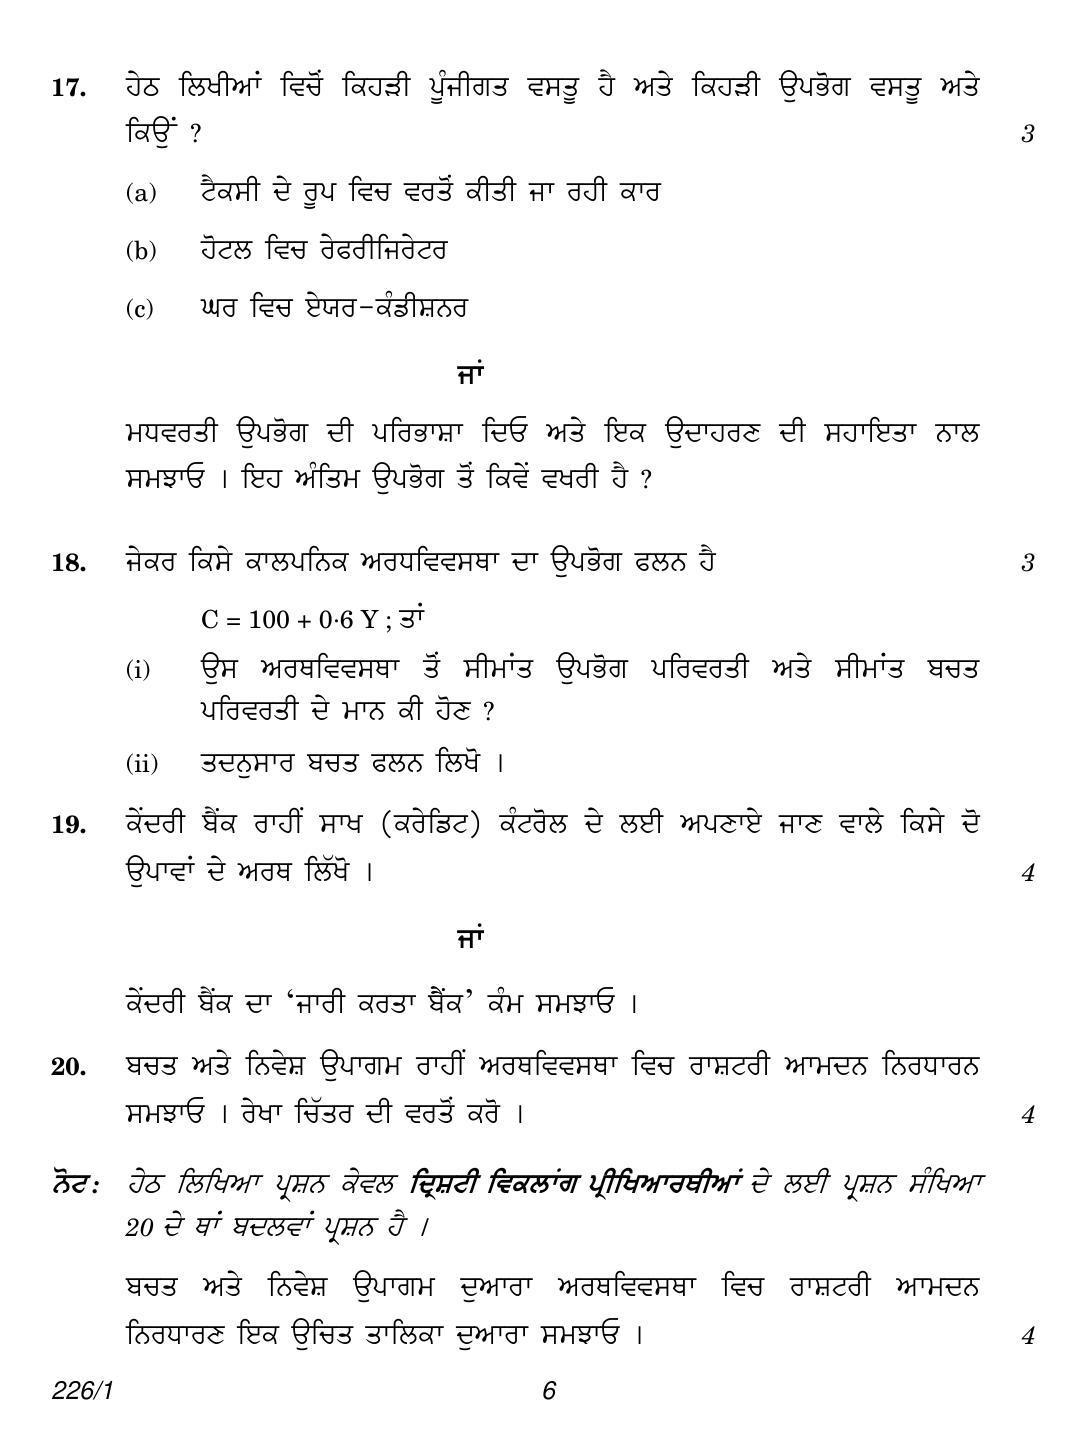 CBSE Class 12 226-1 (Economics Punjabi) 2018 Question Paper - Page 6